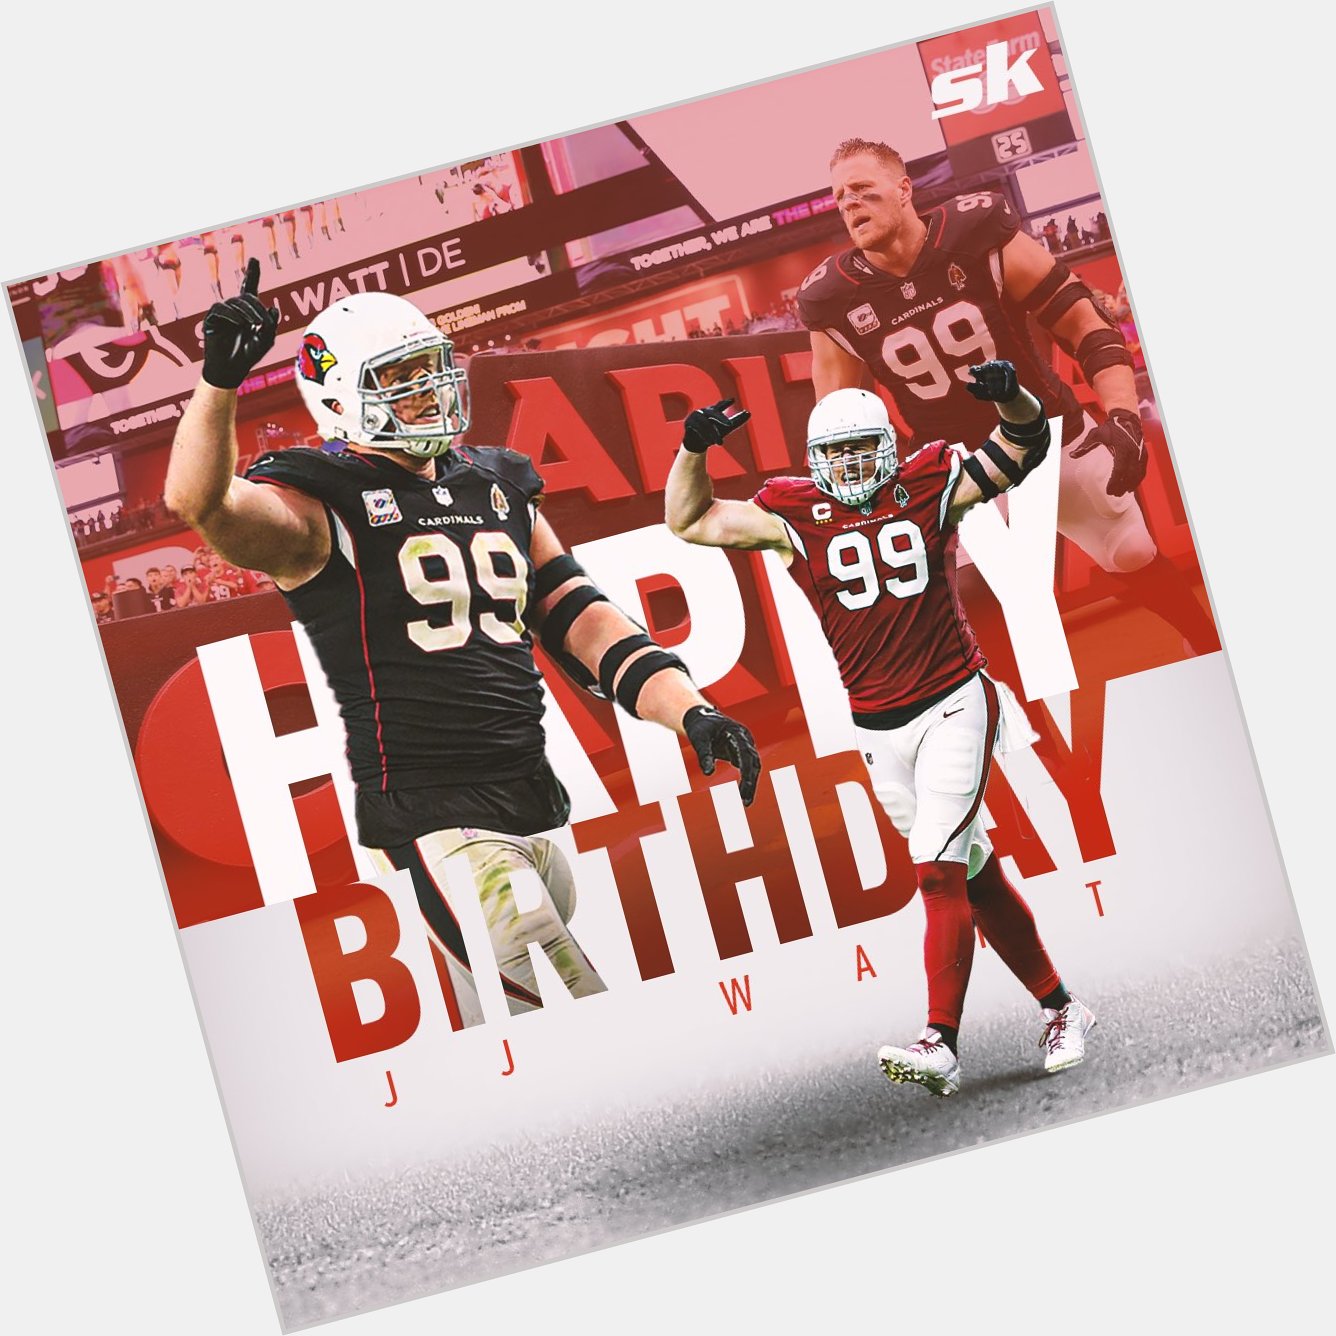 Happy Birthday to JJ Watt  5x Pro Bowl 5x First-team All-Pro 2x NFL Sacks leader NFL 2010s All-Decade team 